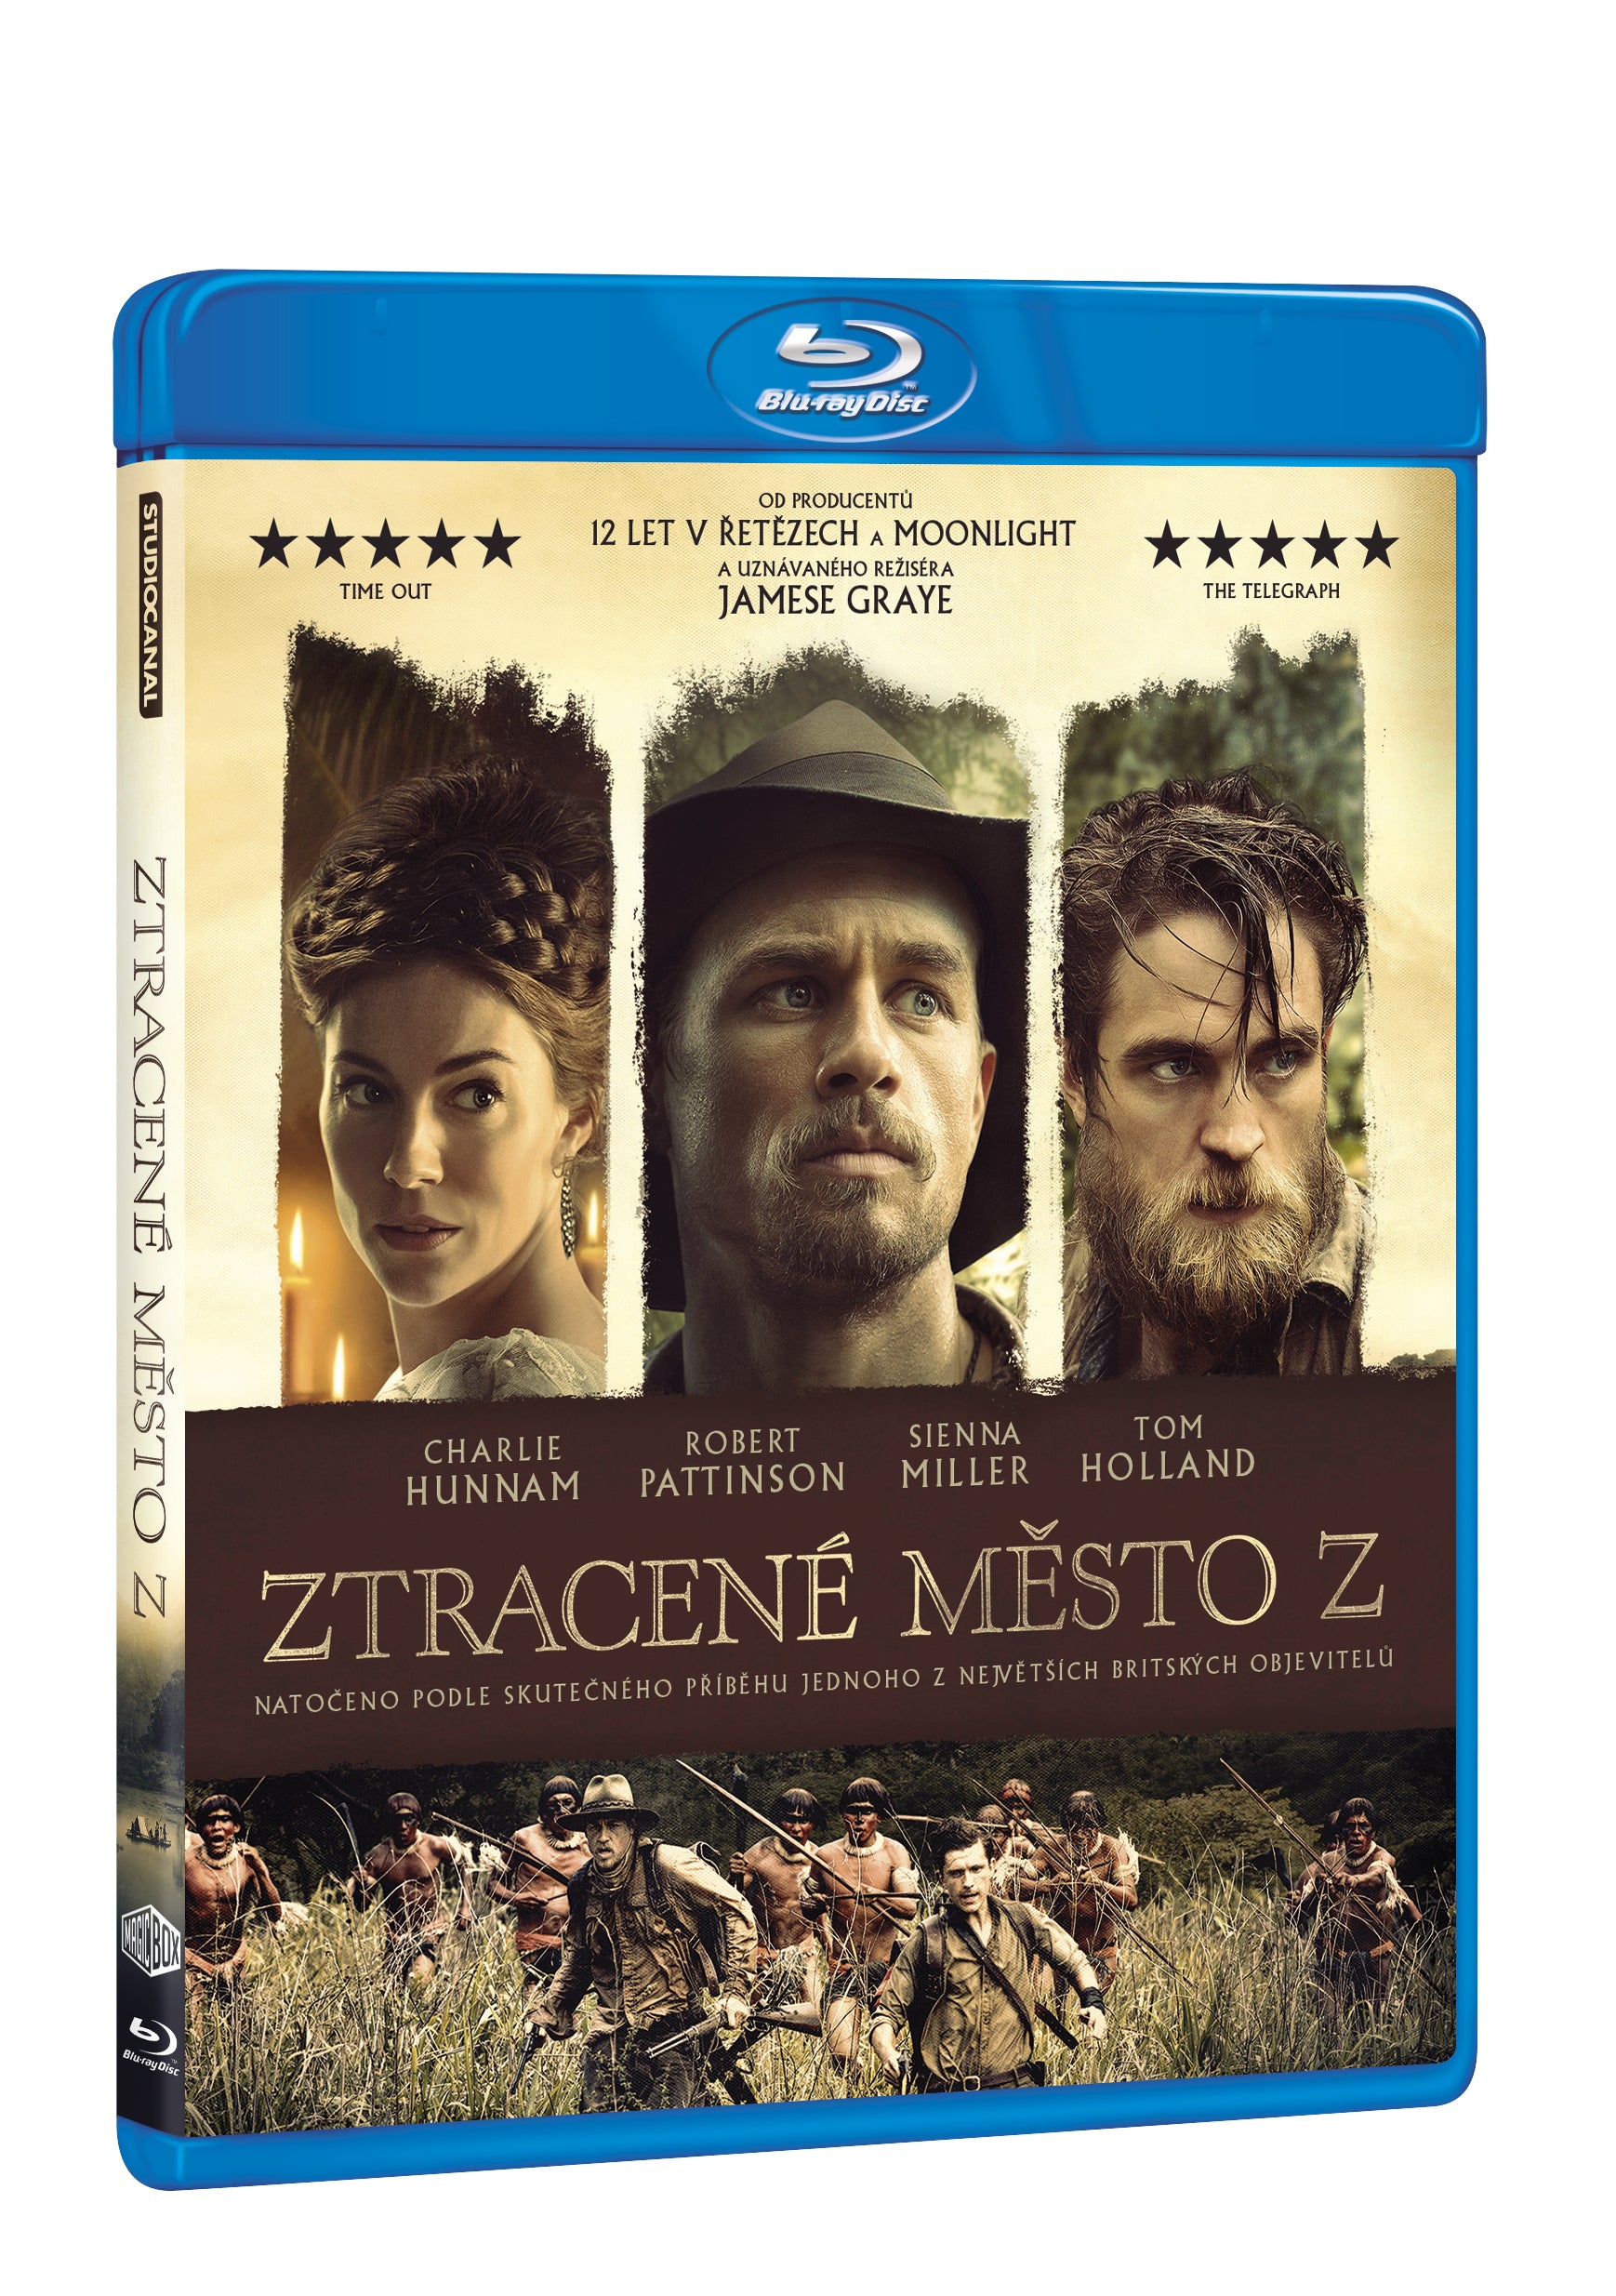 Ztracene mesto Z BD / Lost City of Z - Czech version